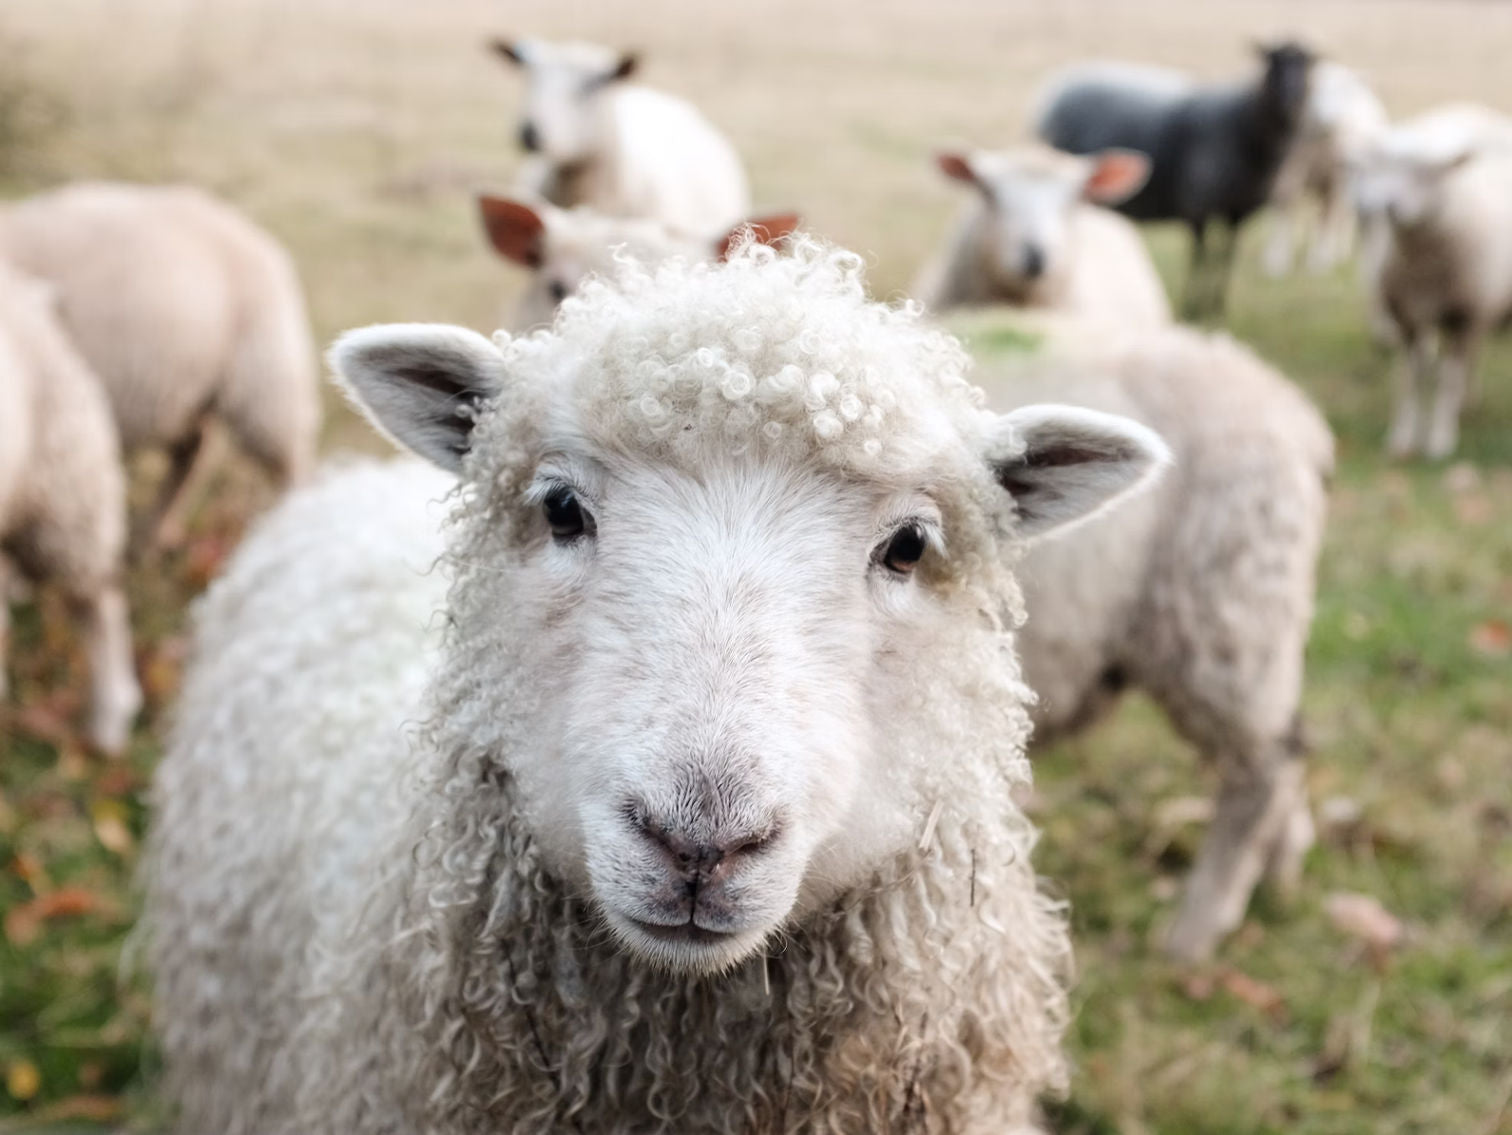 Wooly Worsted Merino Yarn – Ewe Ewe Yarns